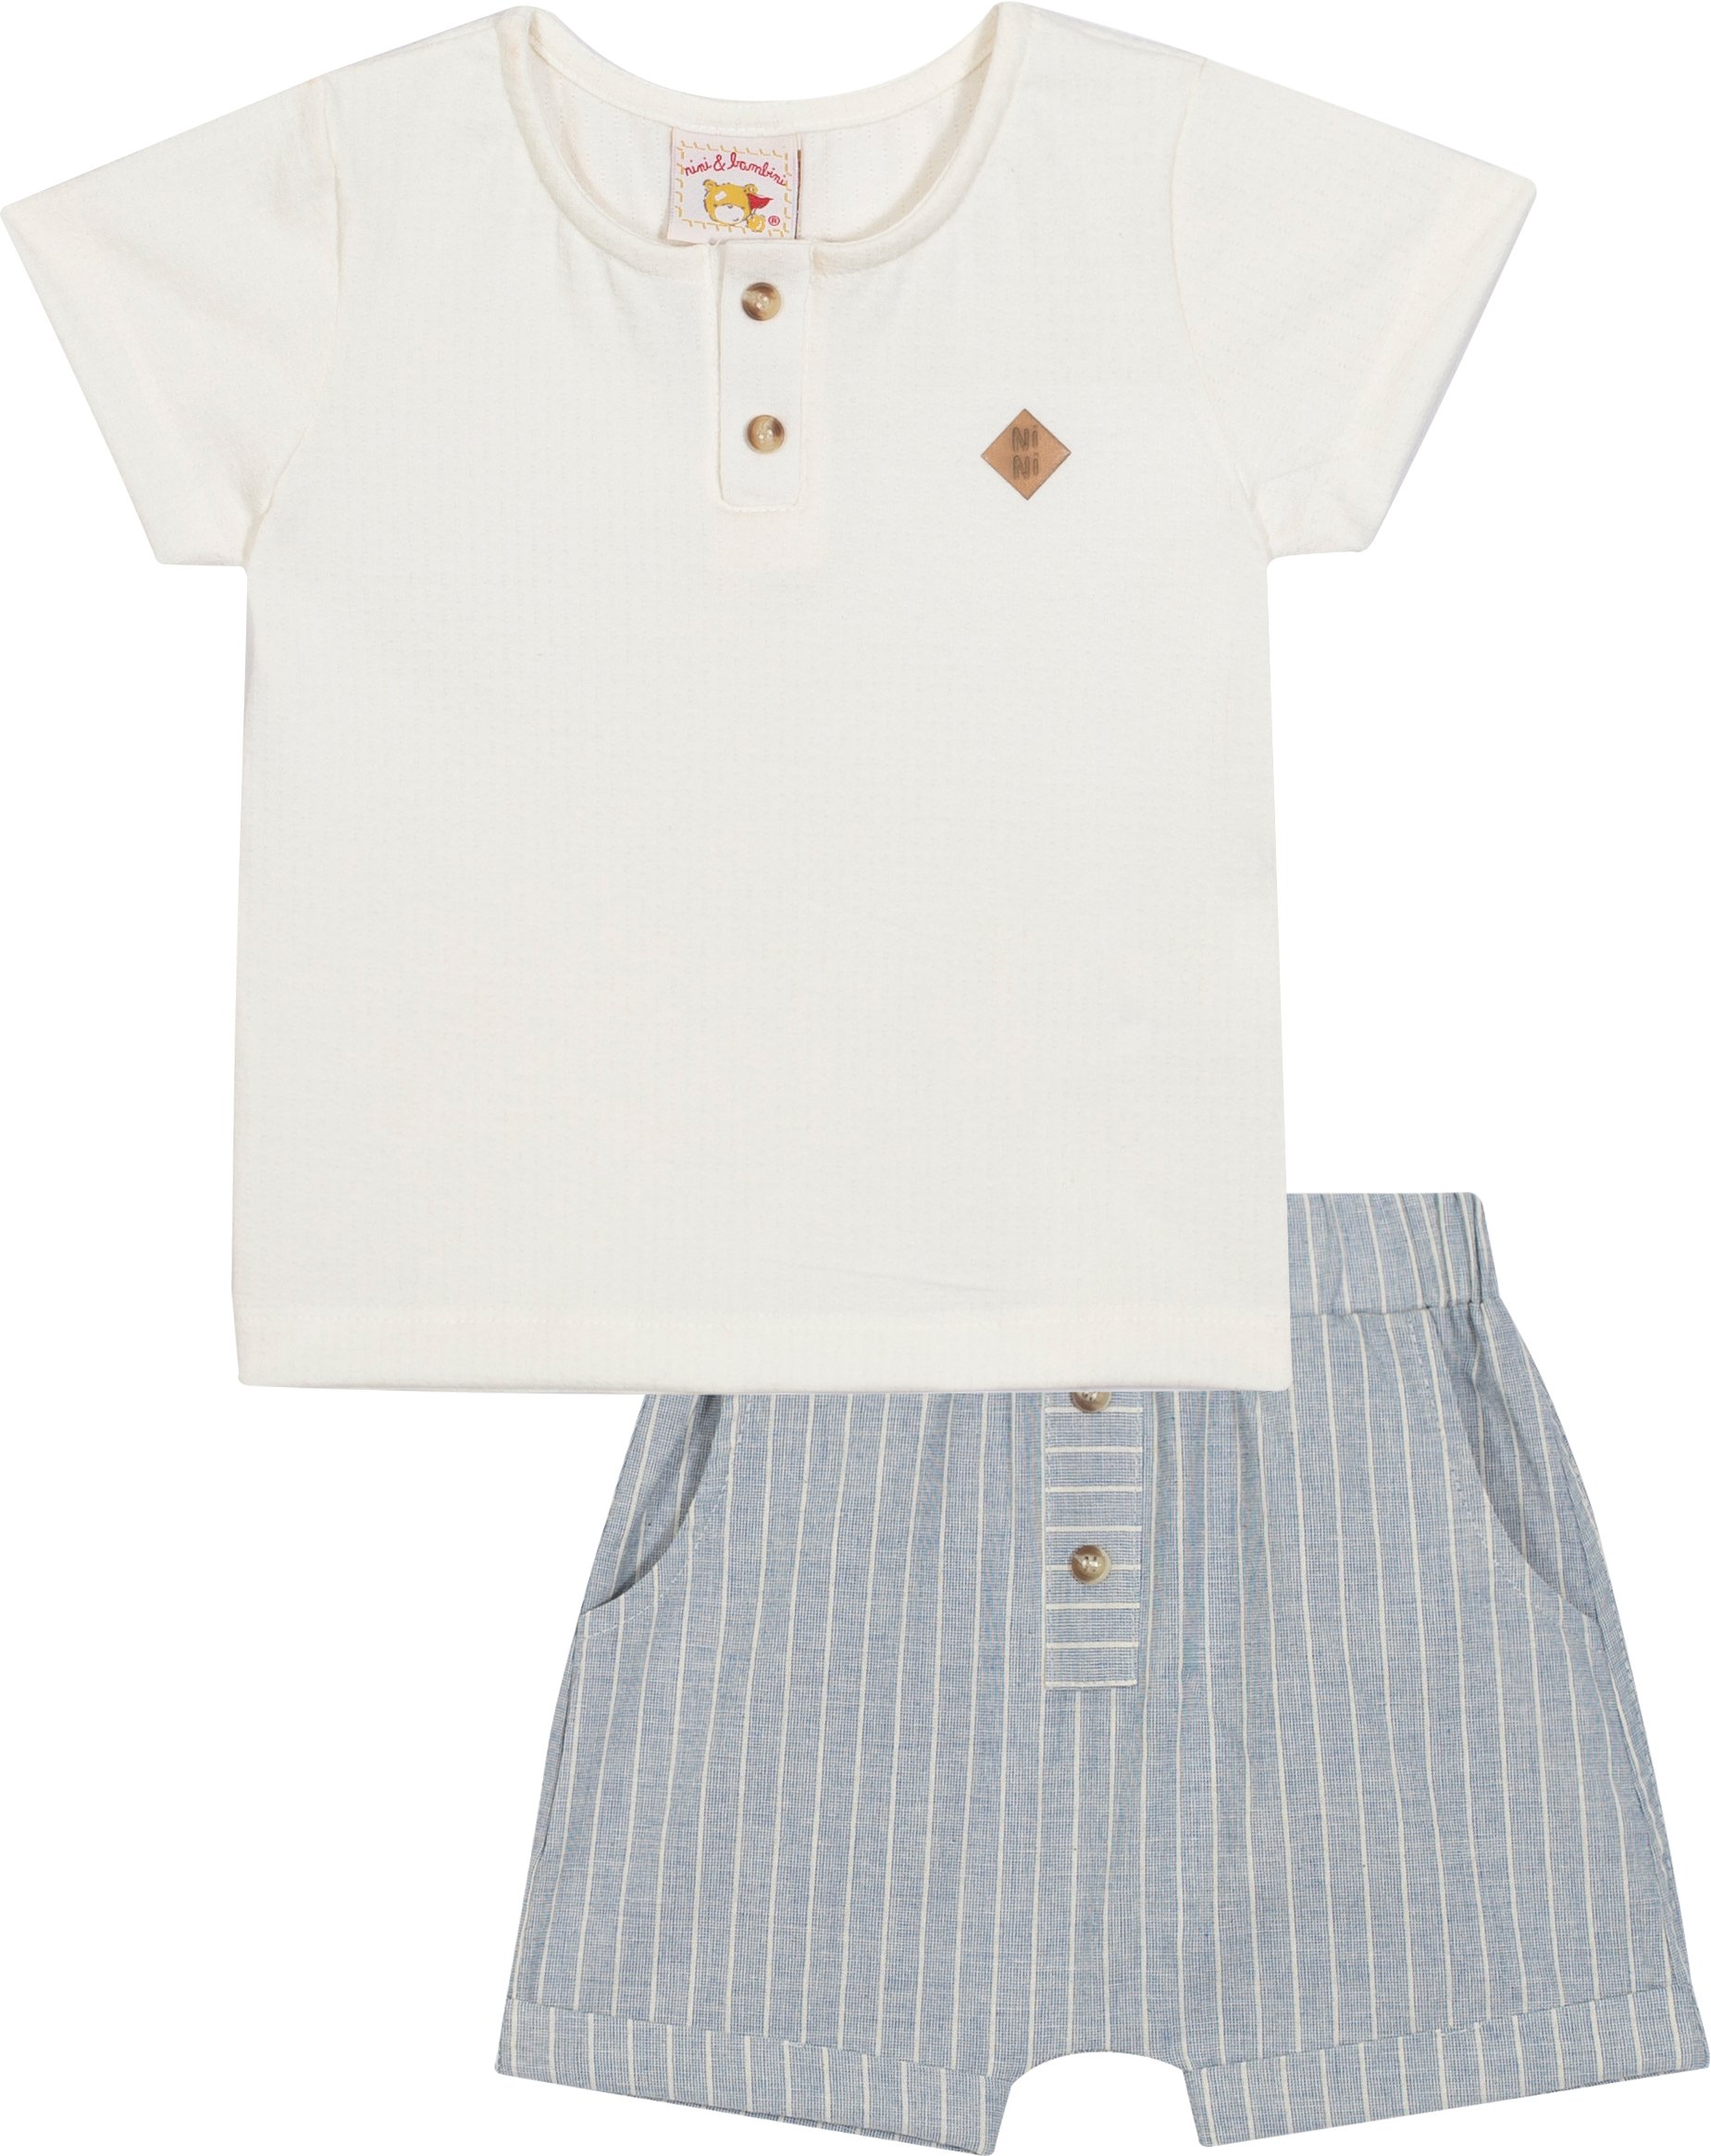 Conjunto Camisa em Malha Texturizada e Bermuda - Nini Bambini